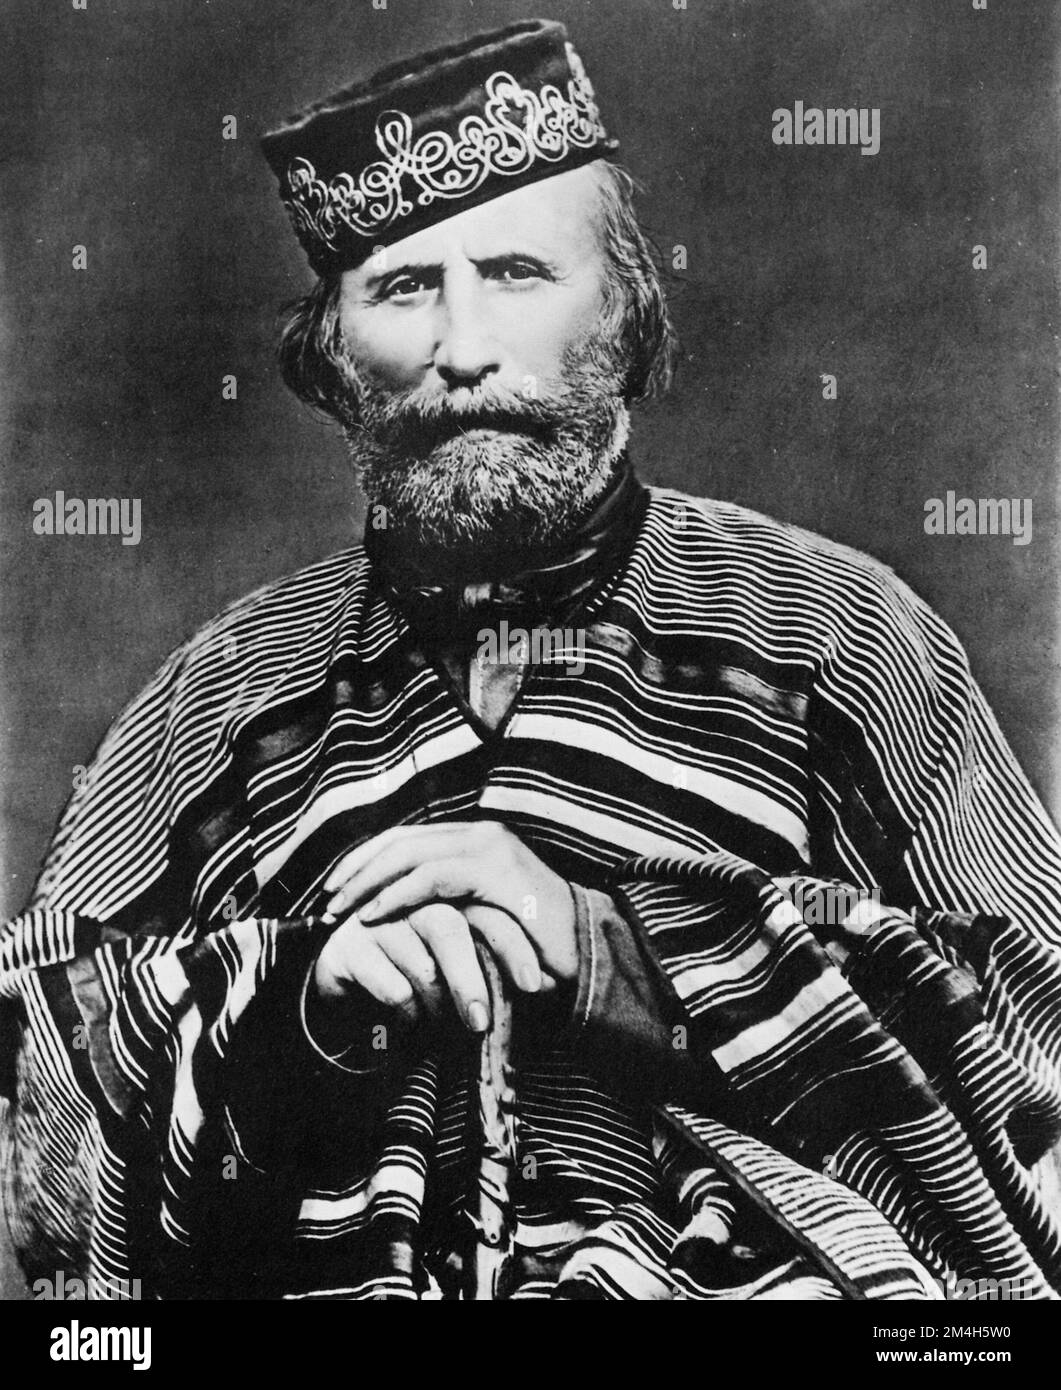 Frères Alinari - Giuseppe Garibaldi un soldat italien - 1866. Banque D'Images